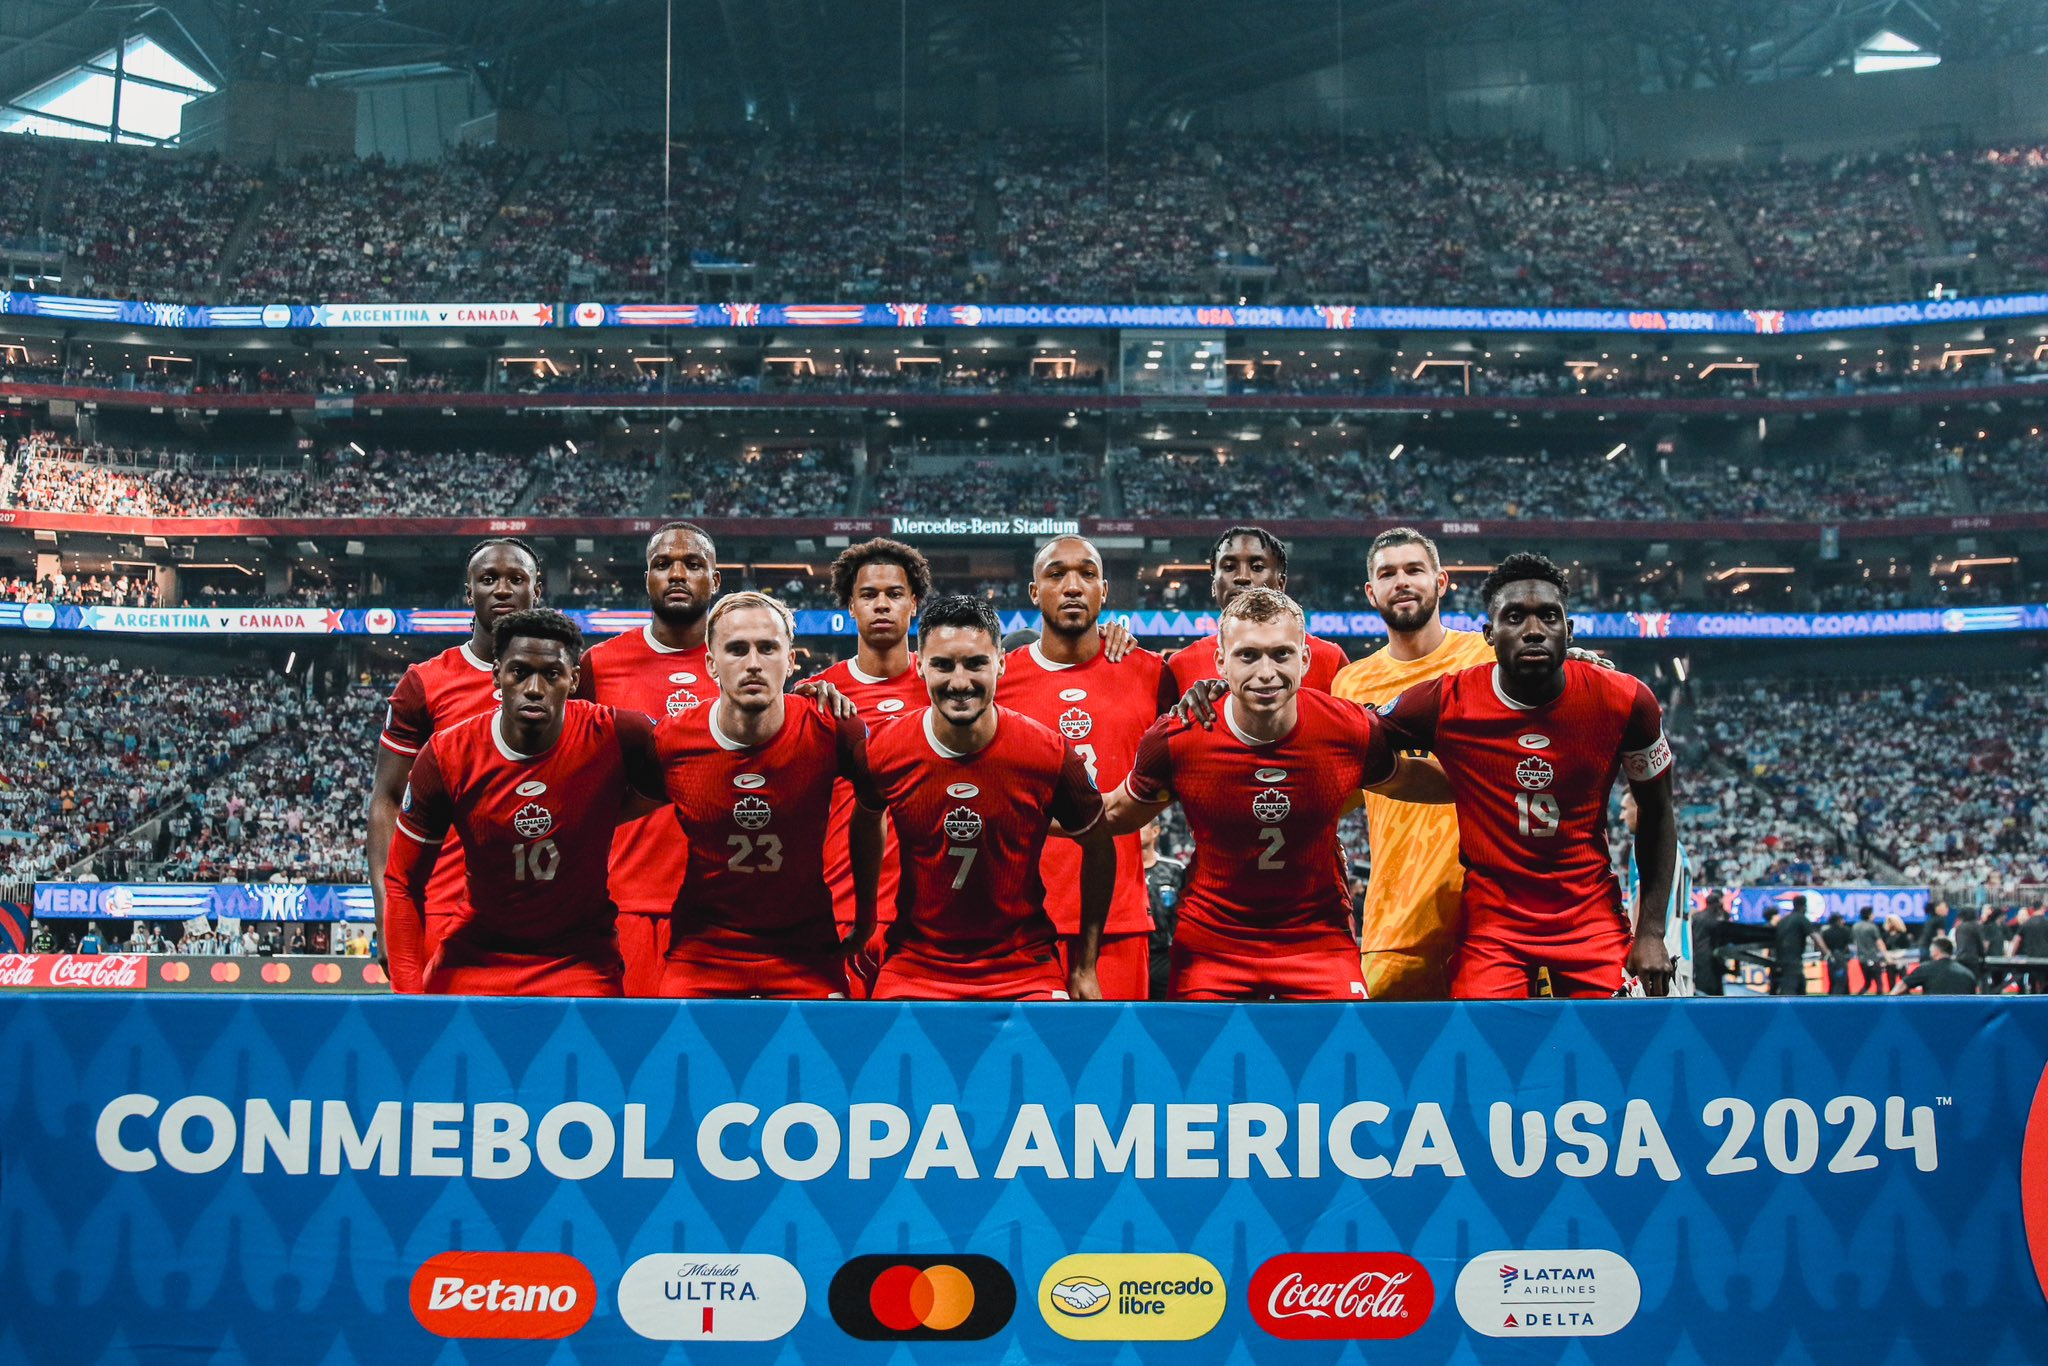 Posible alineación de Canadá ante Perú por la Copa América 2024: Jesse Marsch tendría definido su 11 titular